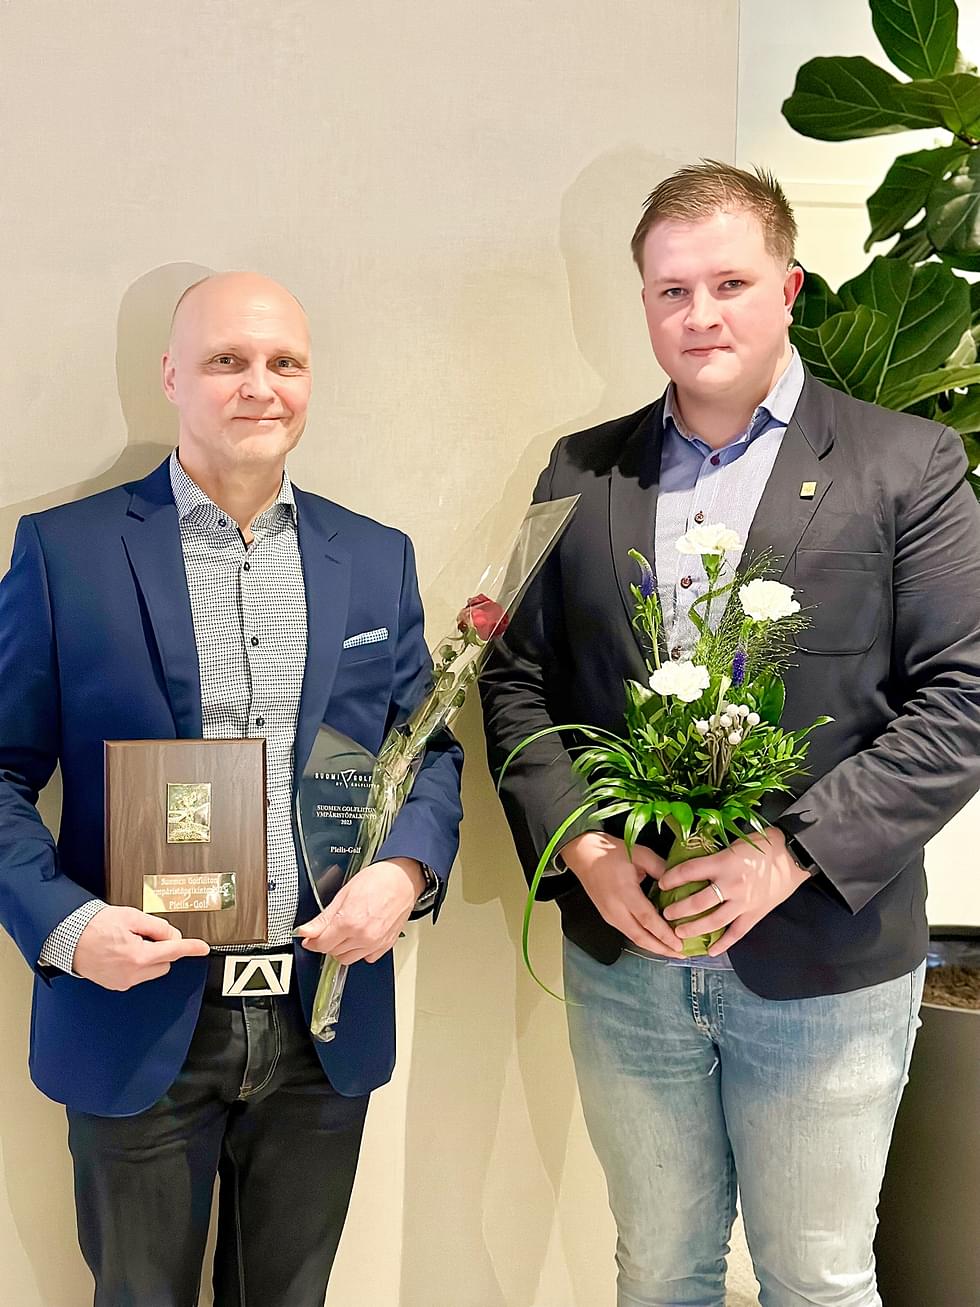 Pielis-Golfia Suomen Golfliiton tilaisuudessa edustivat toimitusjohtaja Juha Holopainen ja Suomen kuurojen EM-joukkueen pelaaja Waltteri Waris.